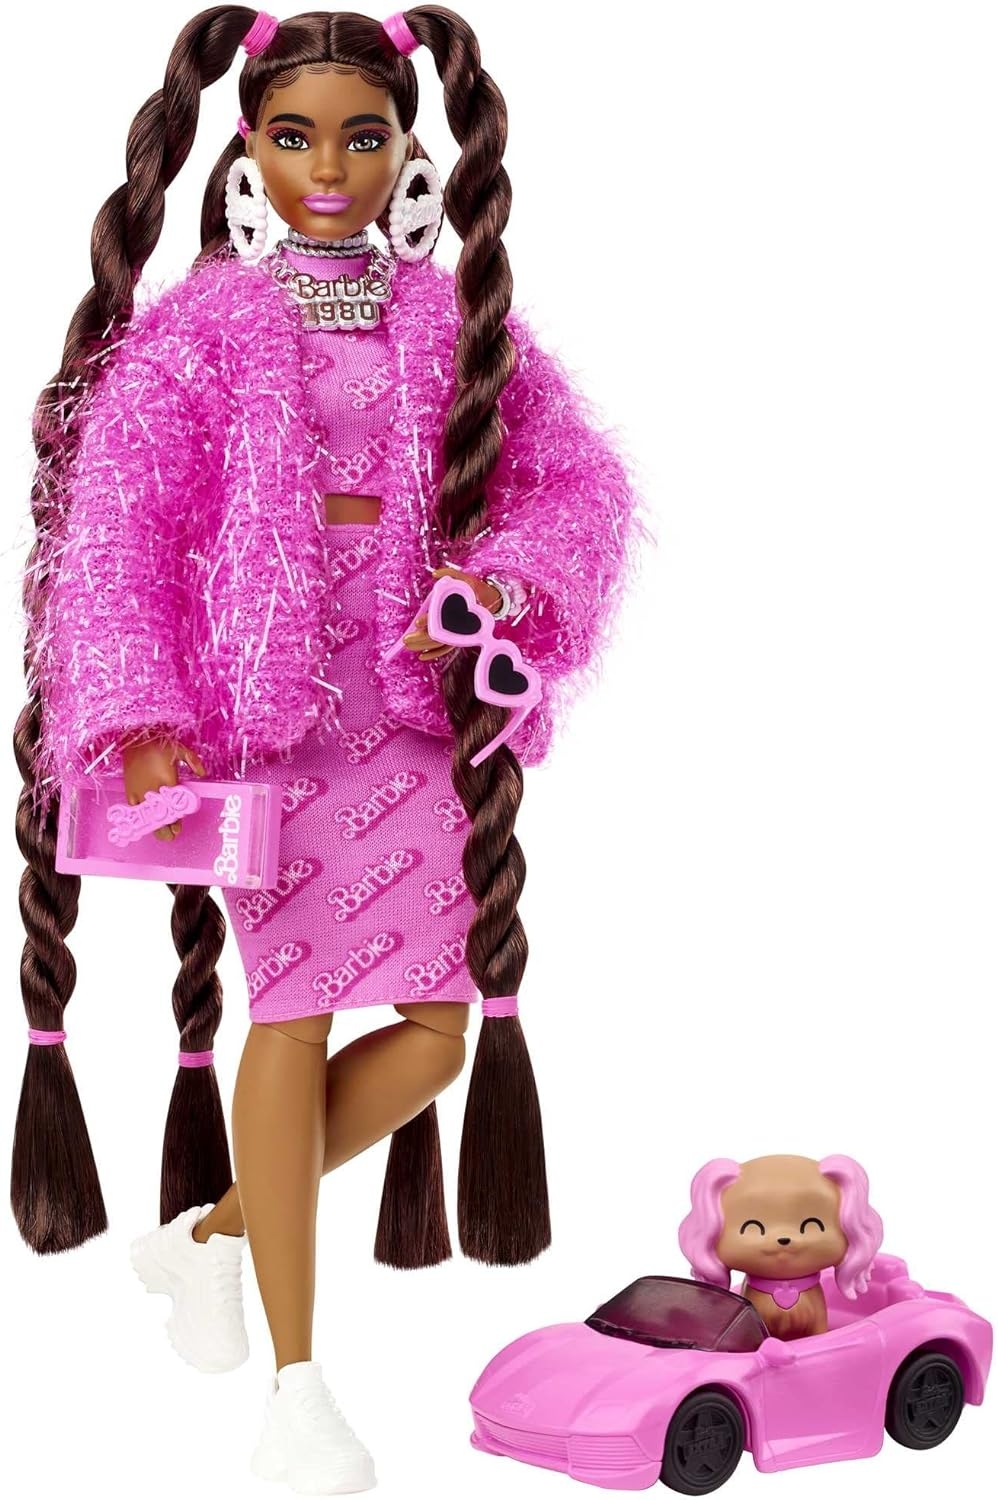 Barbie%20Extra%20Nostaljik%20Kıyafetli%20Bebek%20HHN06%20